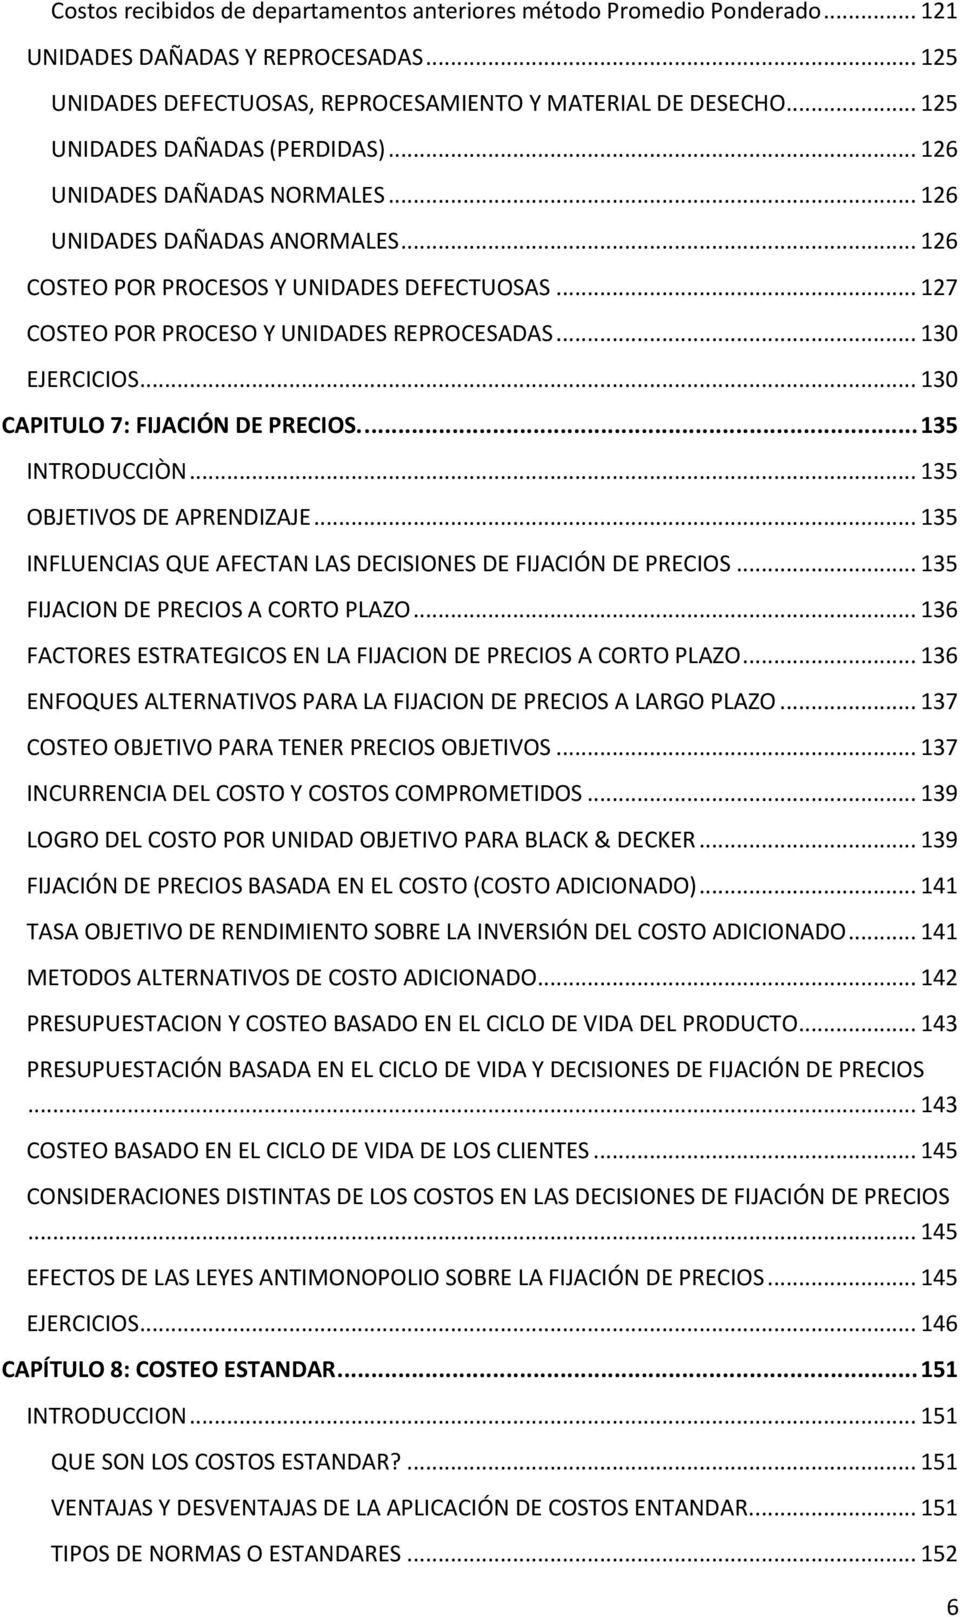 .. 130 EJERCICIOS... 130 CAPITULO 7: FIJACIÓN DE PRECIOS.... 135 INTRODUCCIÒN... 135 OBJETIVOS DE APRENDIZAJE... 135 INFLUENCIAS QUE AFECTAN LAS DECISIONES DE FIJACIÓN DE PRECIOS.